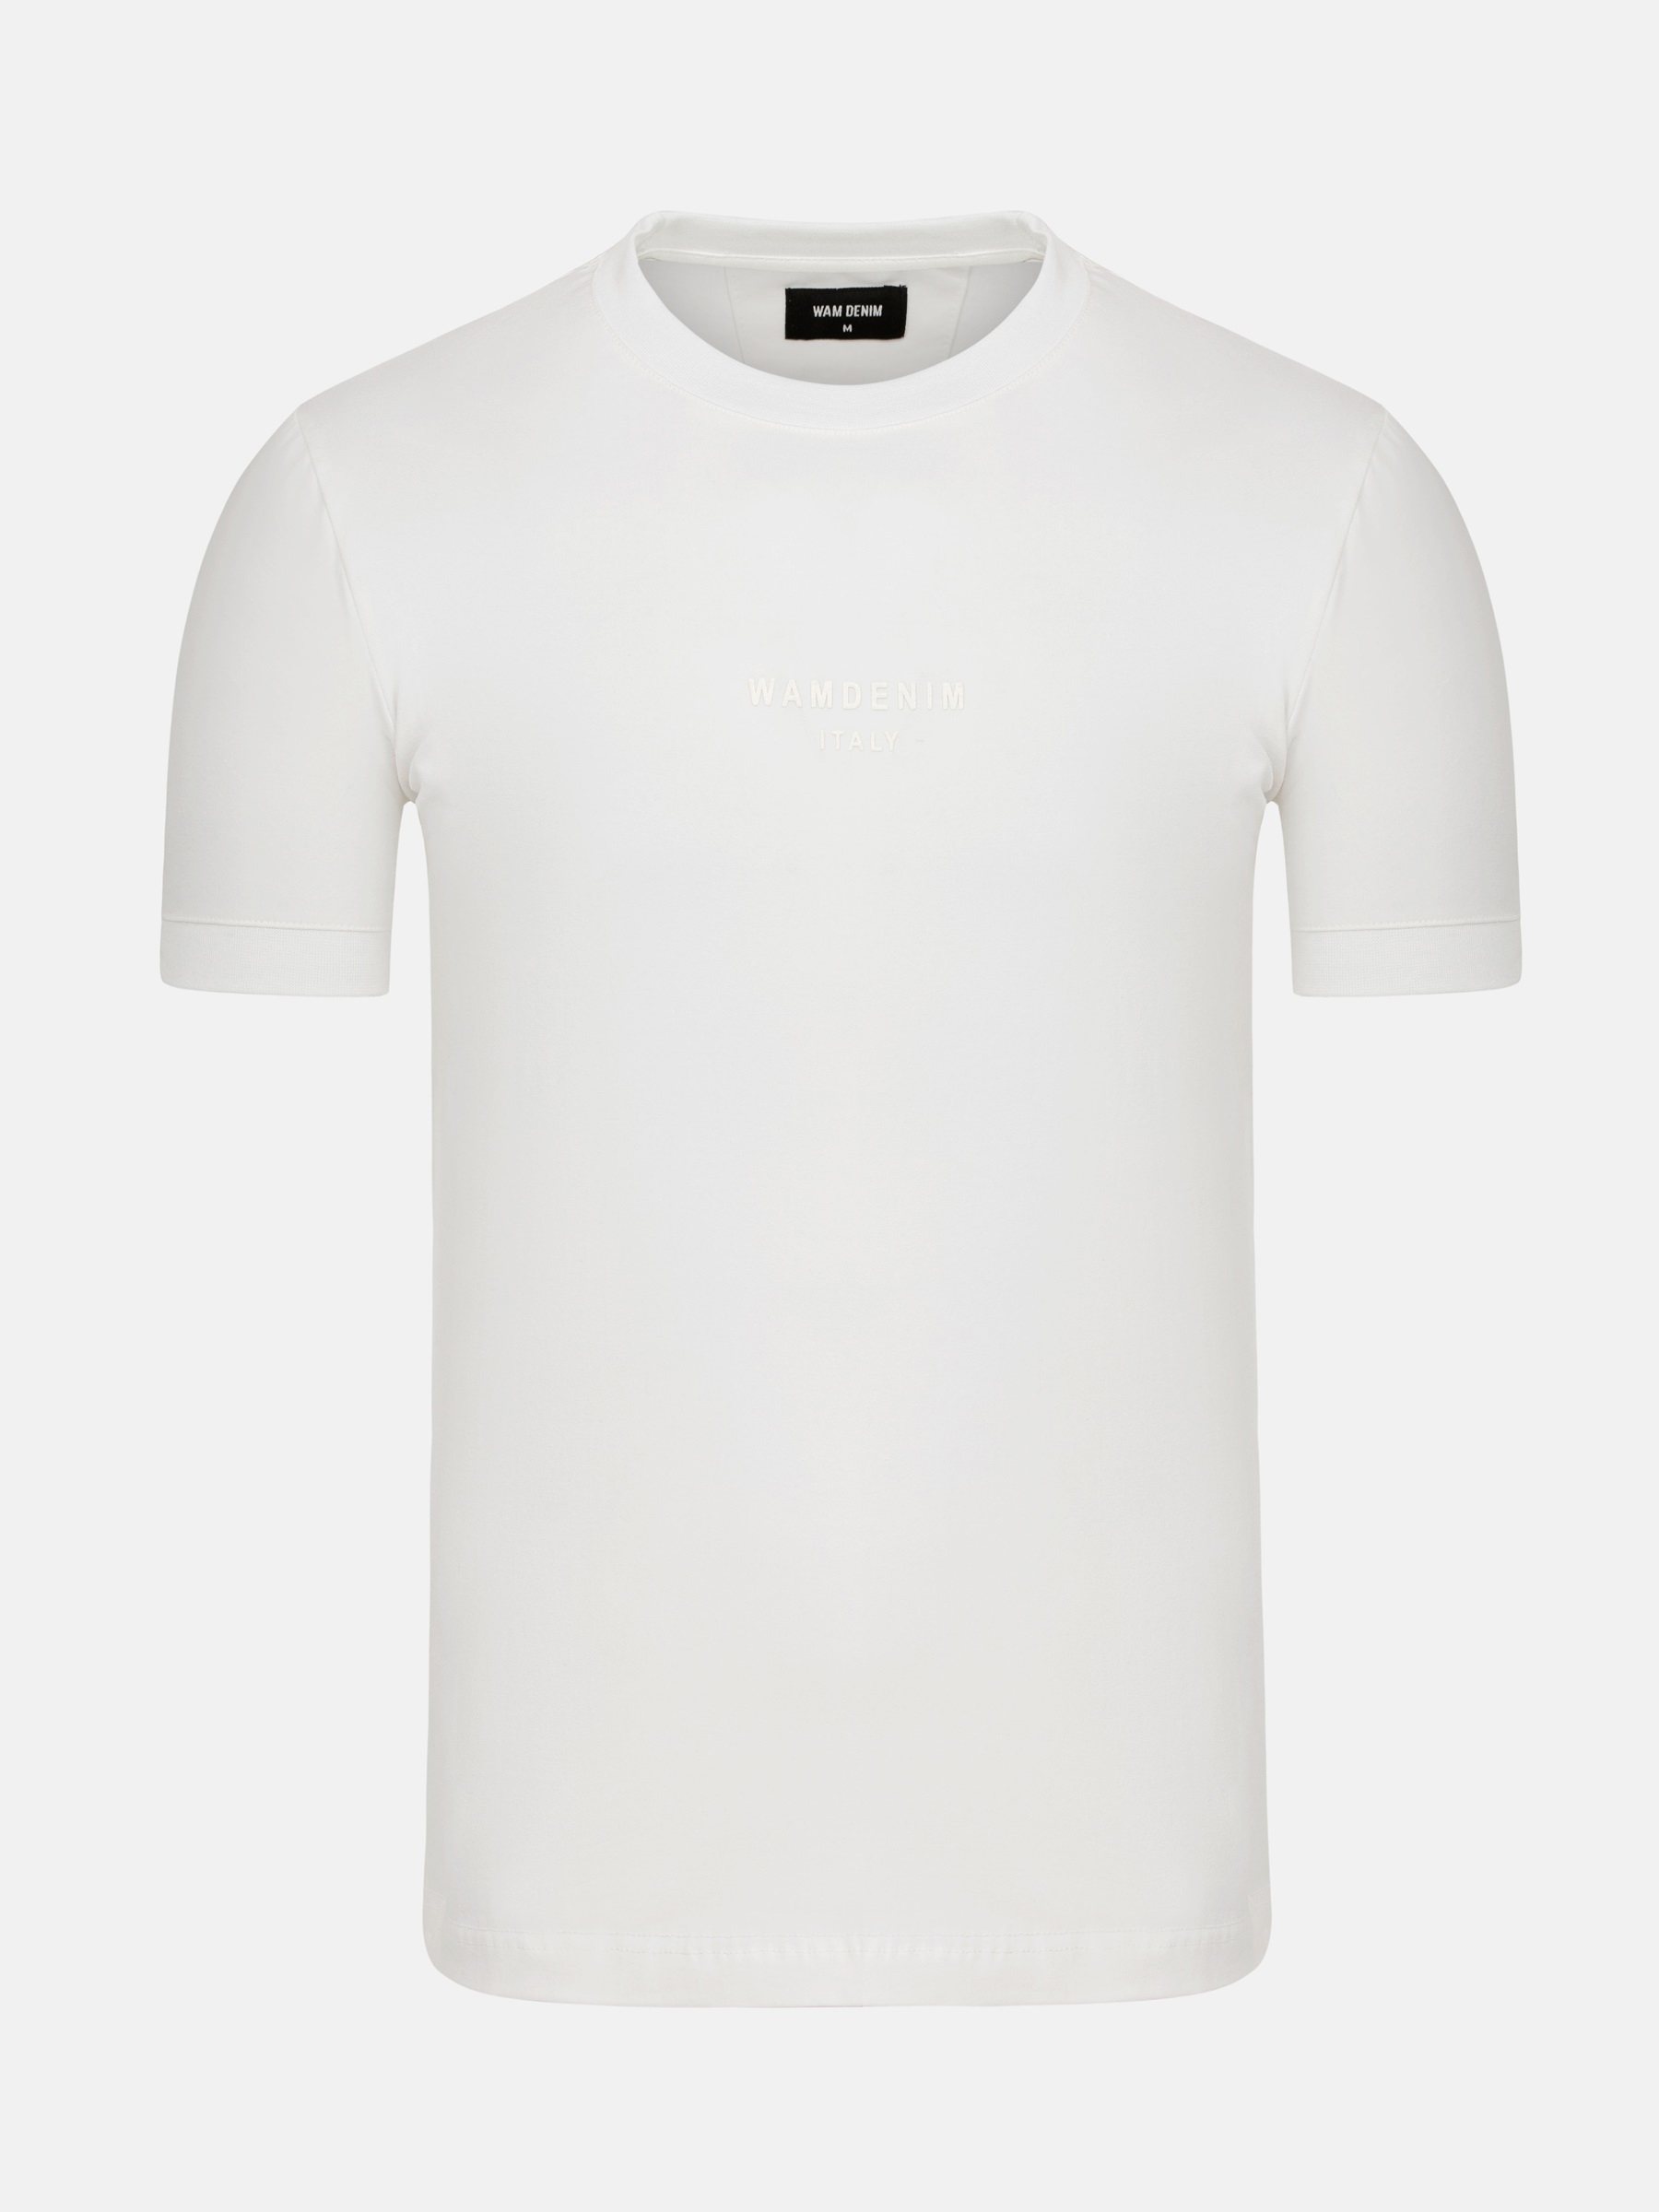 WAM Denim Liam Slim Fit White T-Shirt-